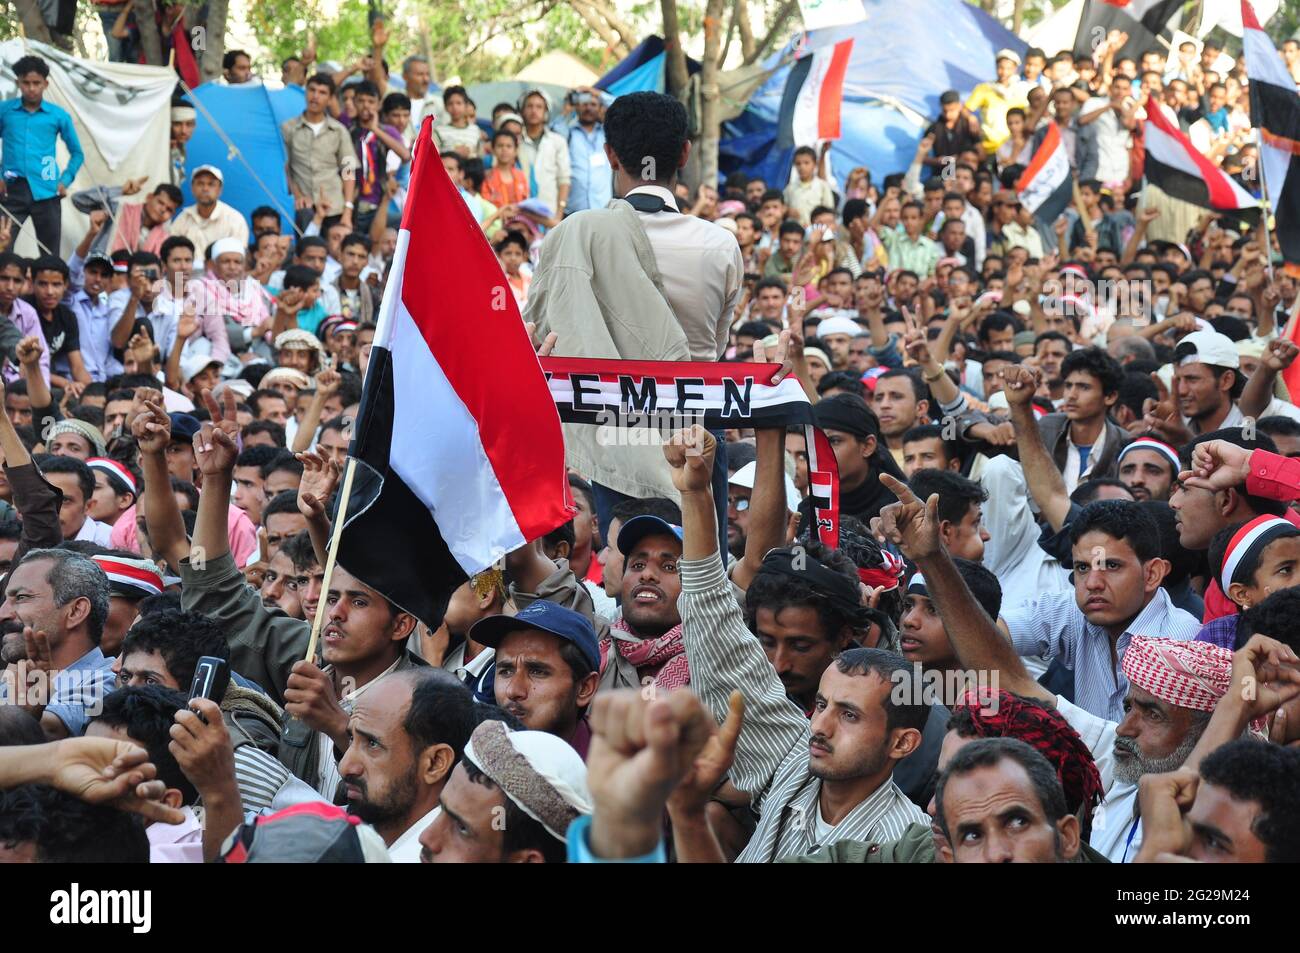 Taiz / Yemen - 28 febbraio 2011: Folle di massa a Freedom Square nella città yemenita di Taiz nella rivoluzione della Primavera araba 2011 Foto Stock